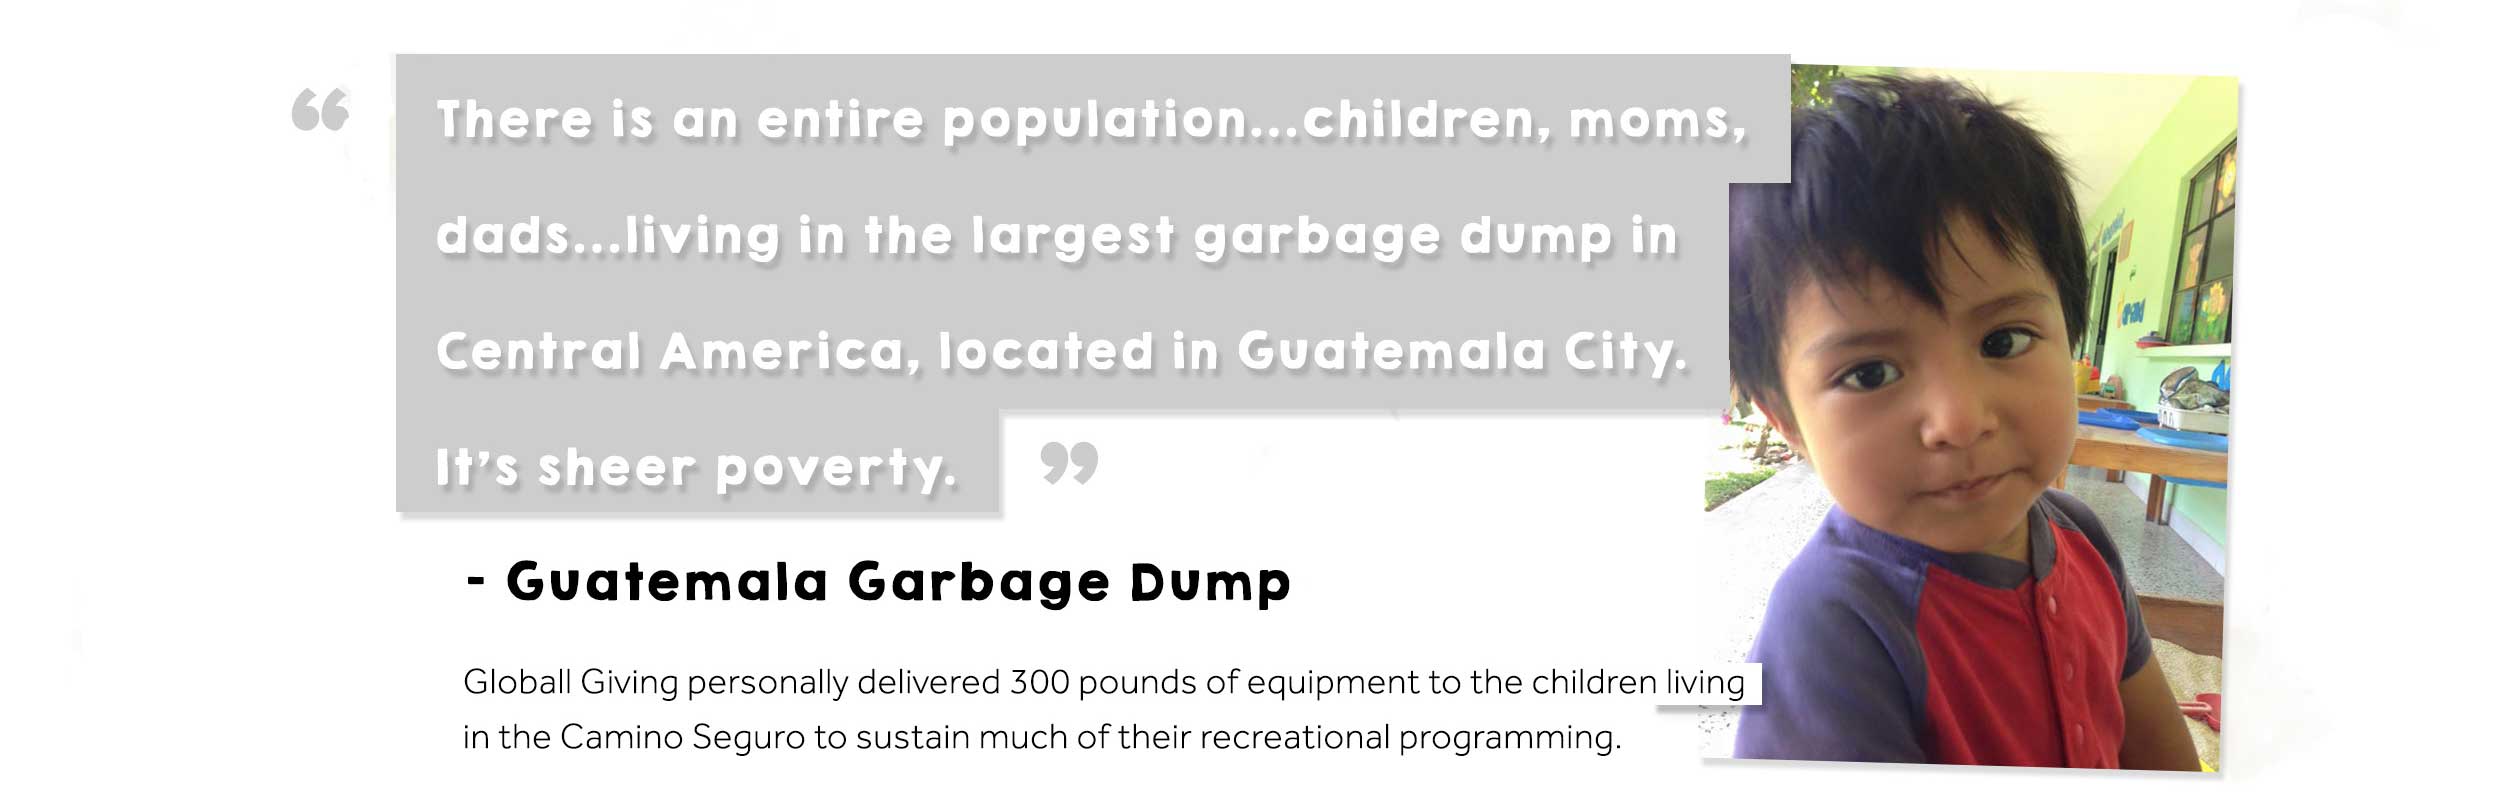 Guatemala Garbage Dump